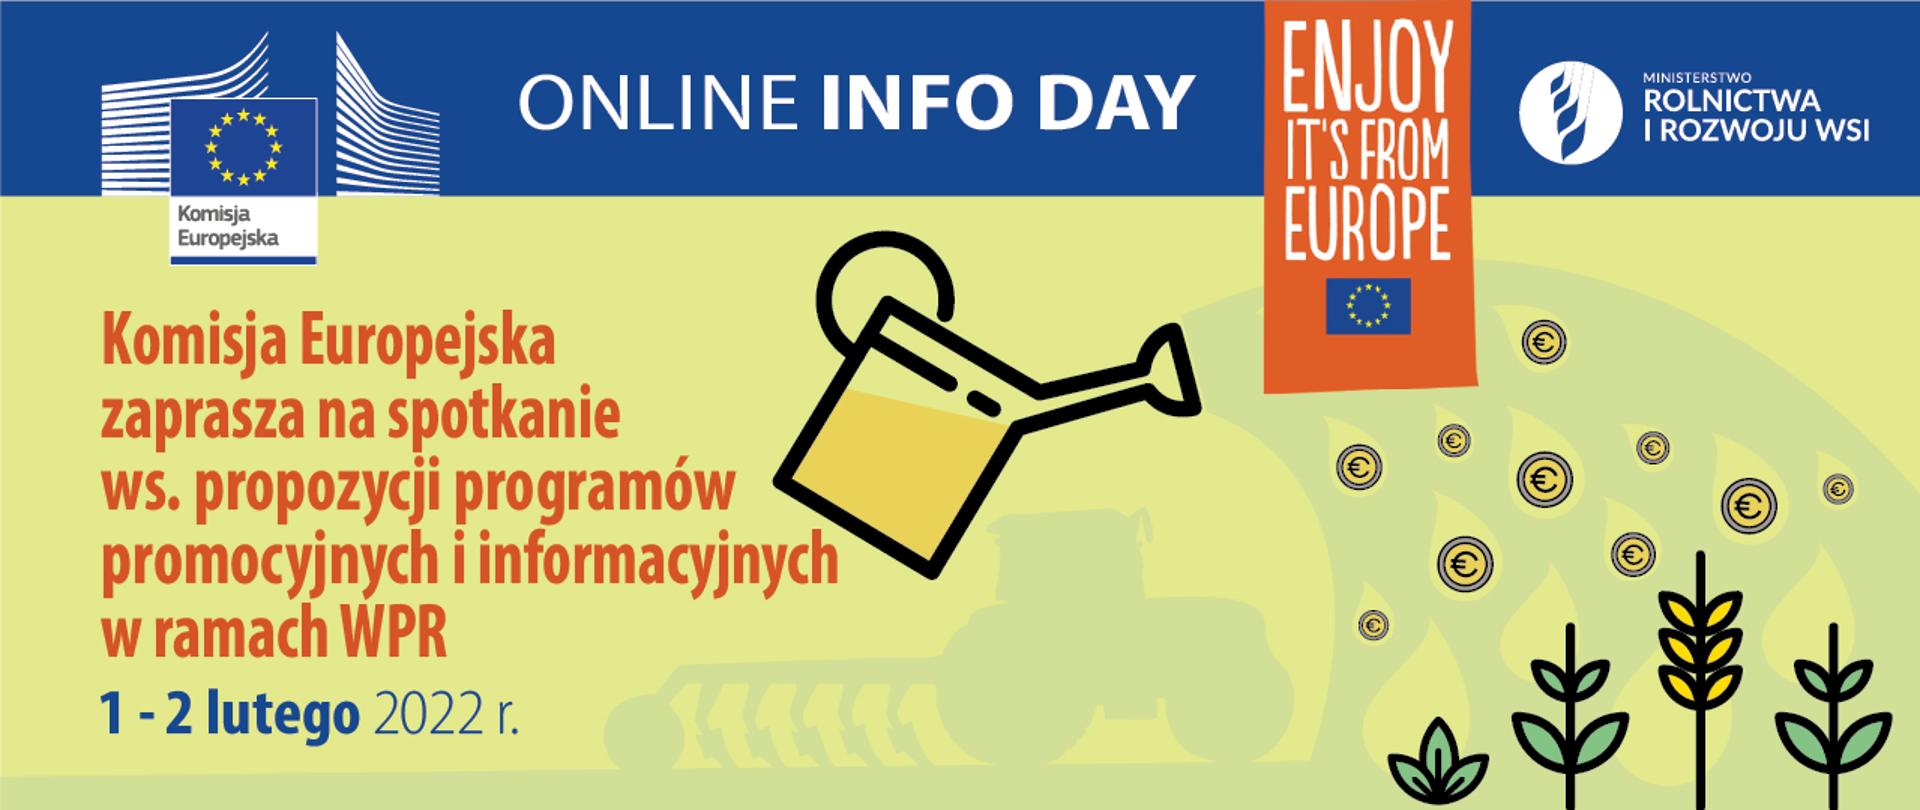 Komisja Europejska zaprasza na spotkanie informacyjne online 1–2 lutego br. Spotkanie jest organizowane dla wszystkich potencjalnych beneficjentów, uprawnionych do składania wniosków na programy informacyjne lub promocyjne dotyczące produktów rolnych.